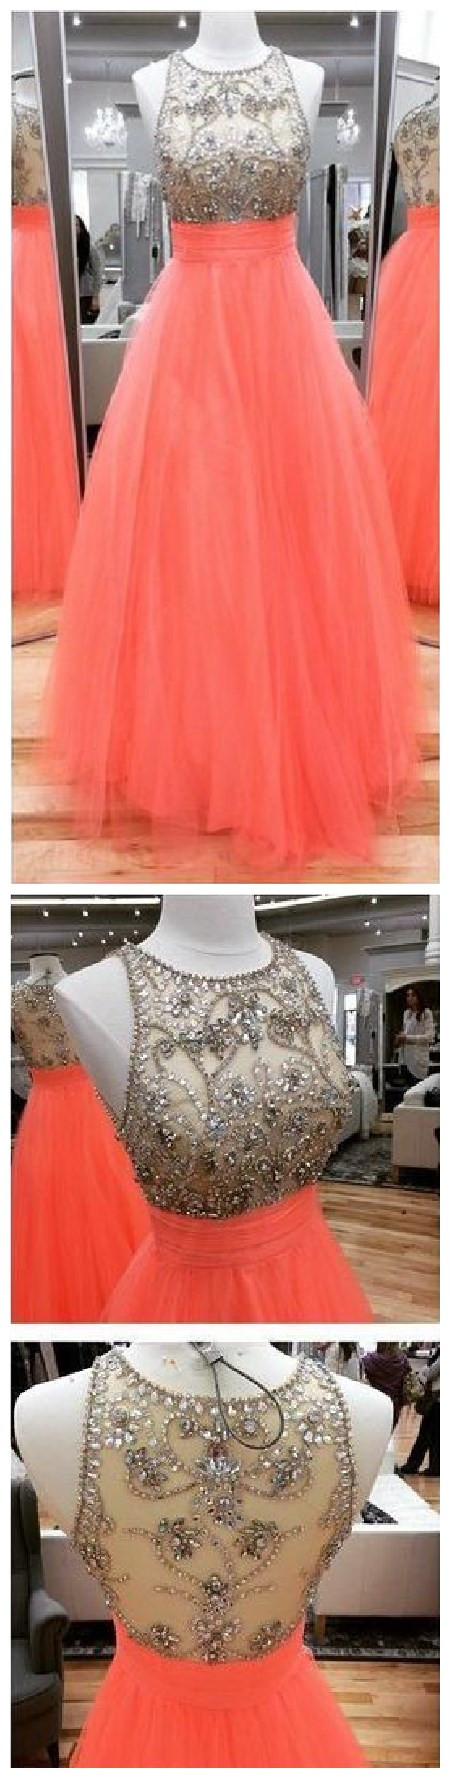 Prom Dress Prom Dresses Evening Dresses Evening Gown Party Dresses Prom Dresses 2017 Women Prom Dresses Long Sleeves